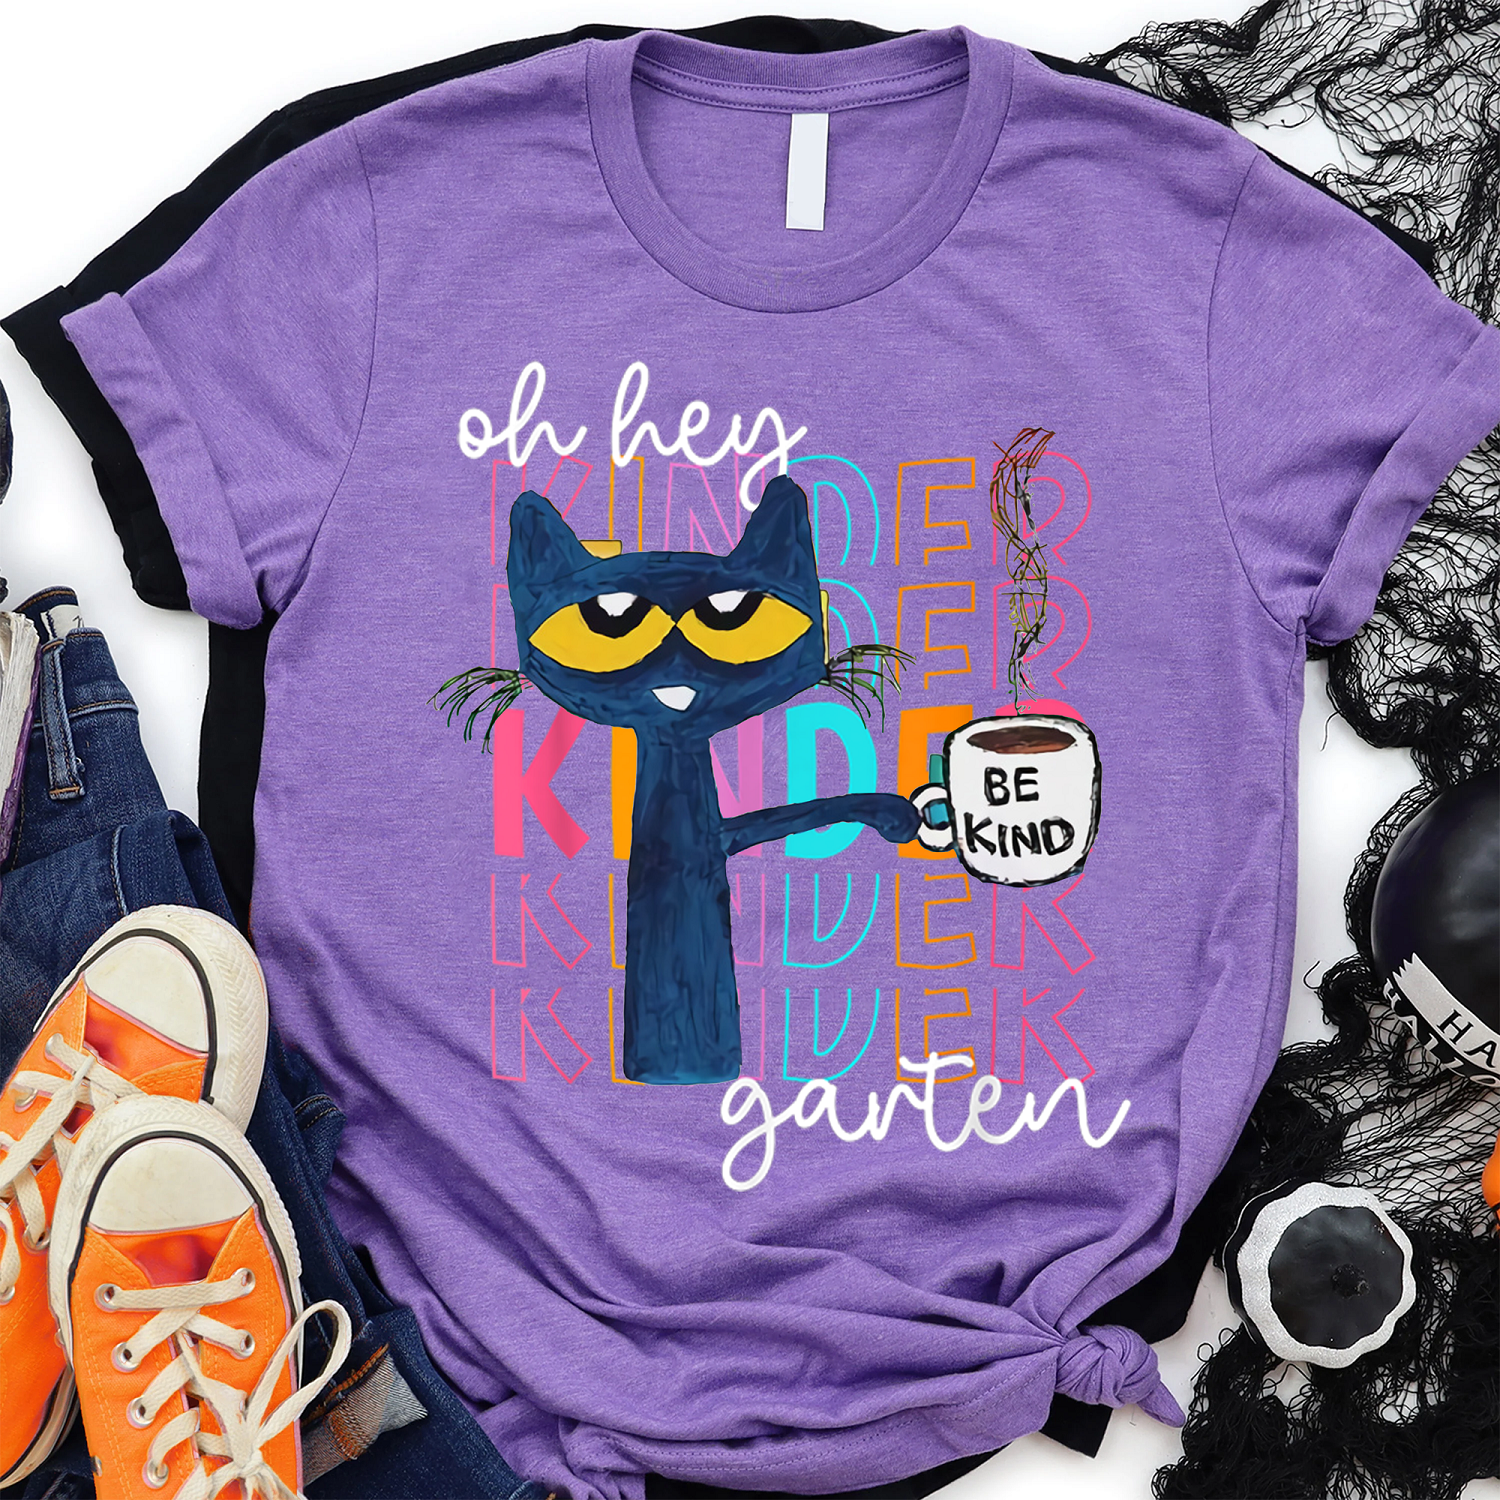 Oh Hey Kindergarten Pete The Cat Shirt, Its All Good In Preschool Cute Cat Shirt, Be Kind Cat shirt, Teacher Shirts, Teacher gift shirt